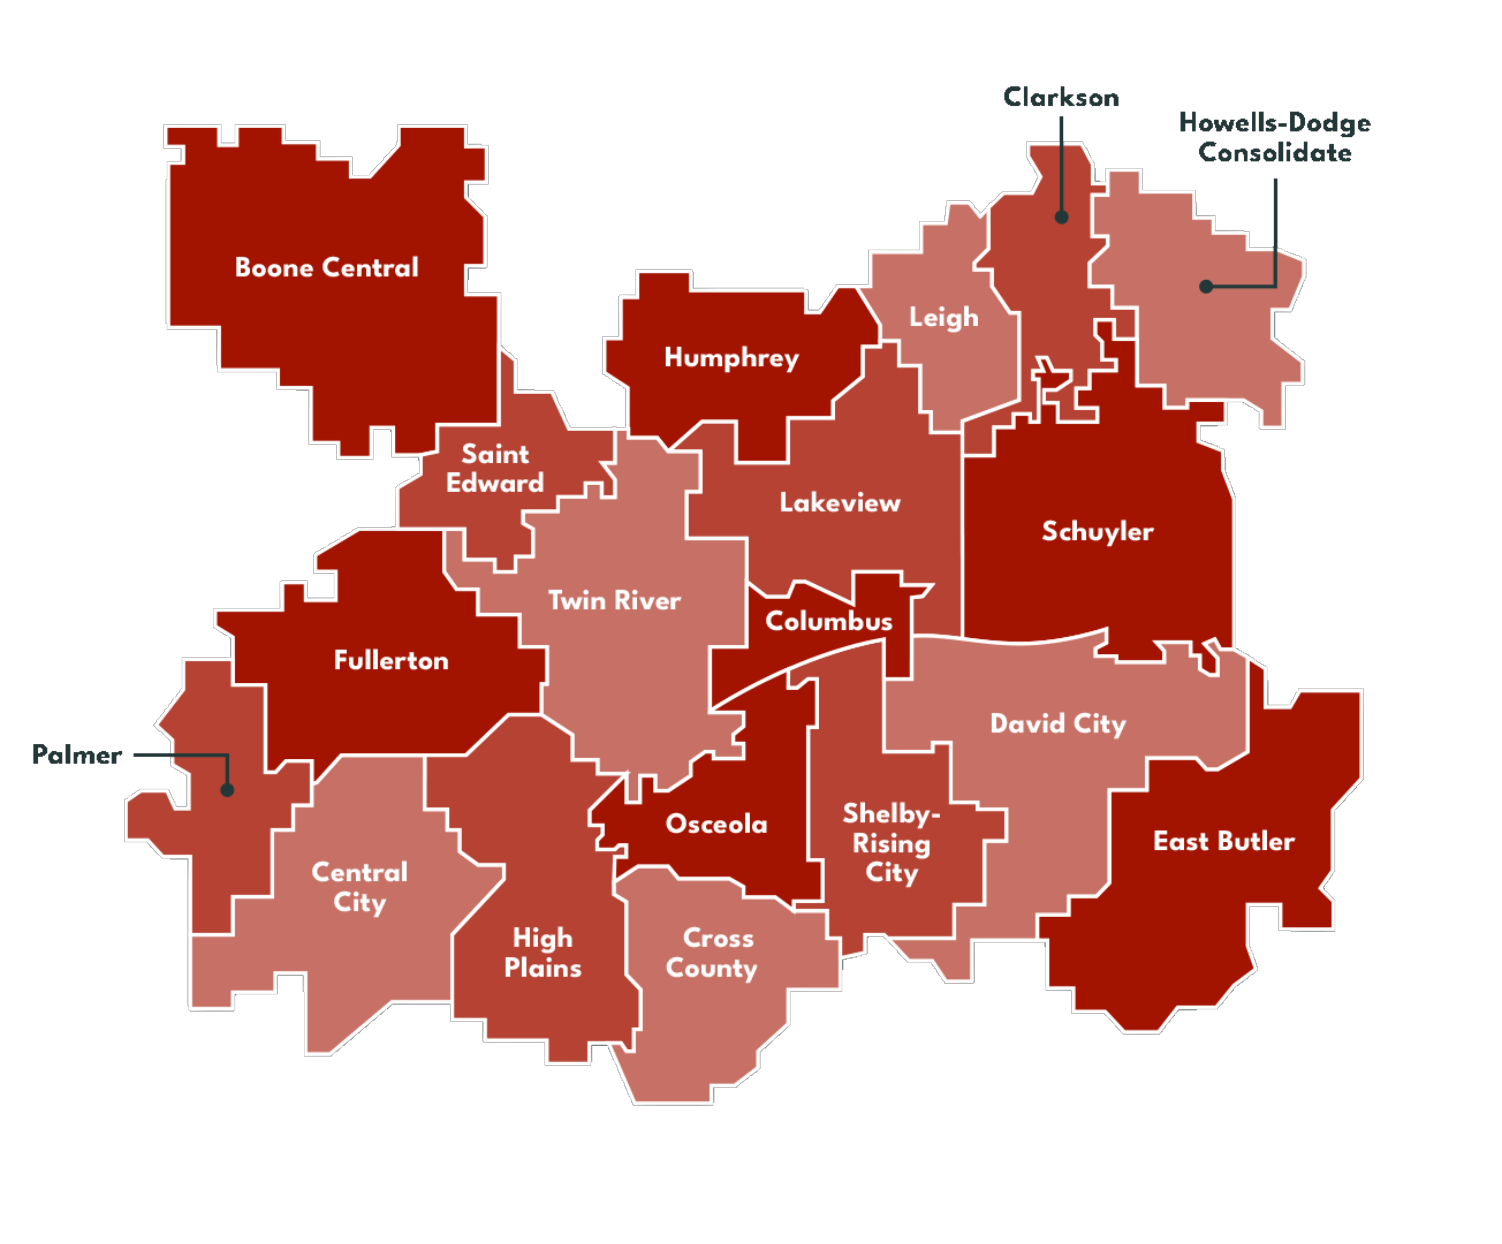 ESU 7 School districts map